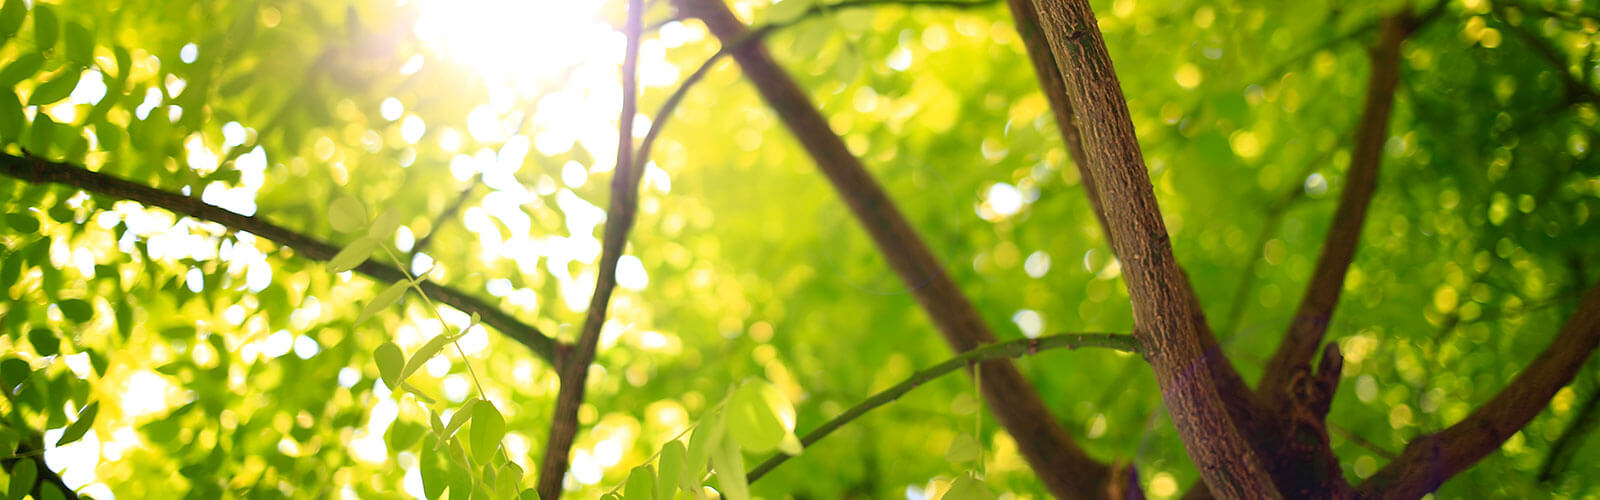 Baum Blätter Sonne